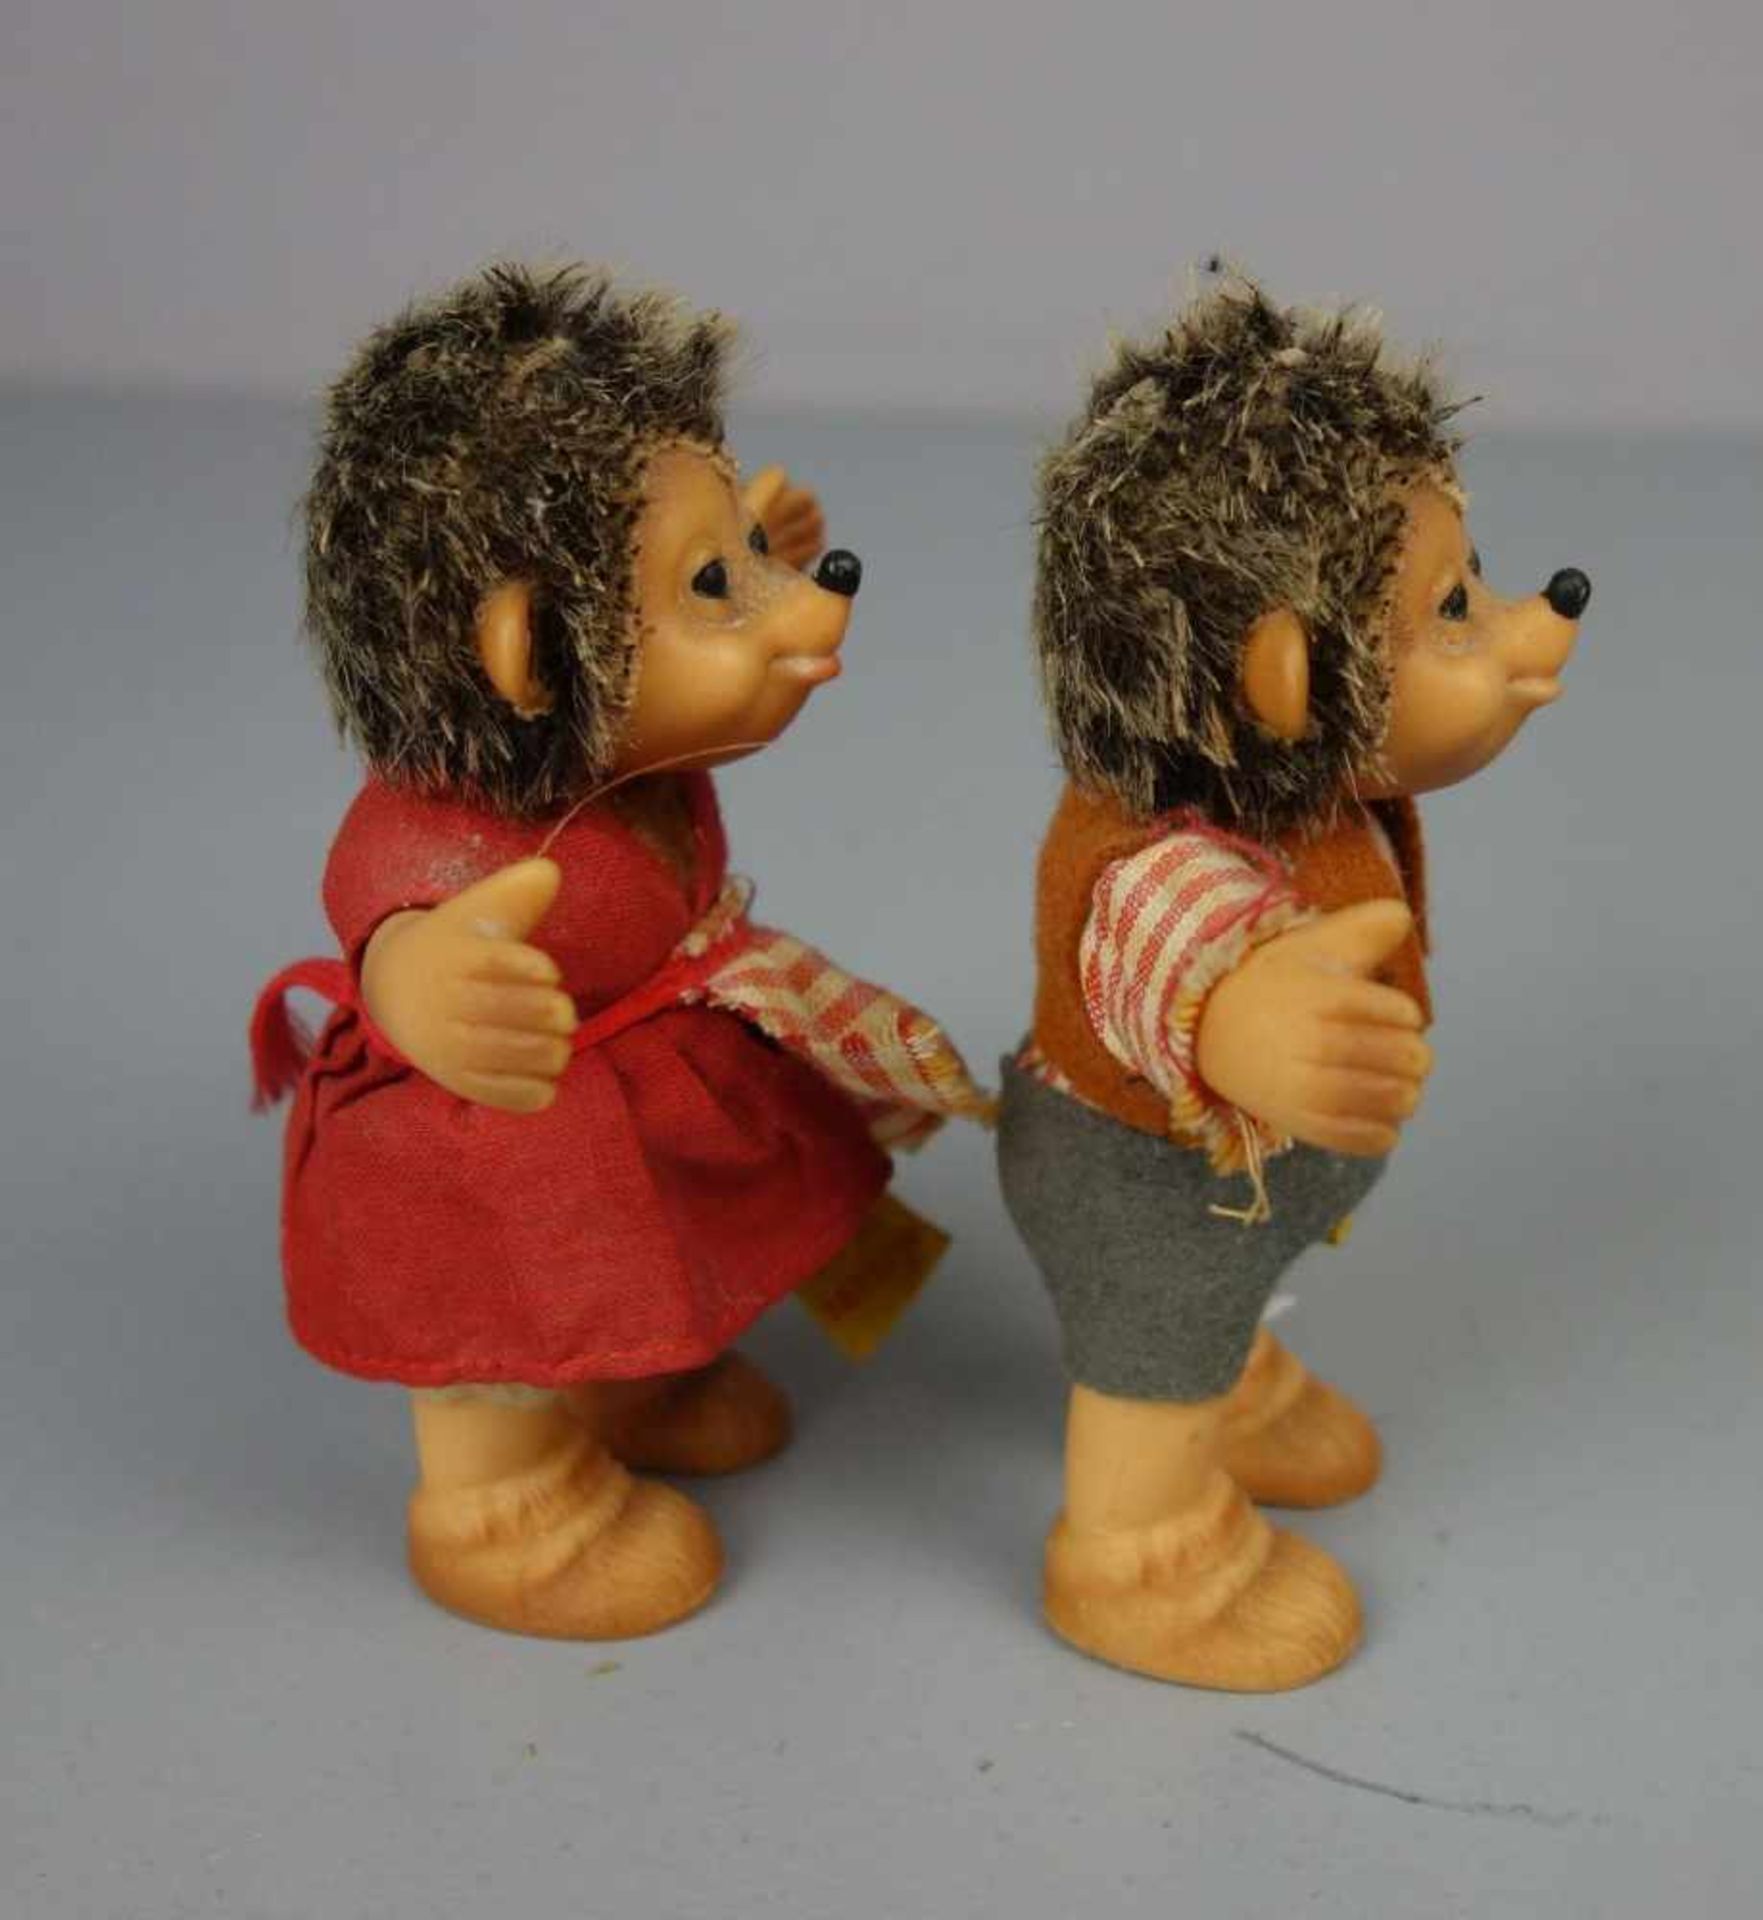 PAAR SPIELFIGUREN / PLÜSCHFIGUREN / fluffy toys: Mecki und Micki, 1970er Jahre, Manufaktur Steiff. - Bild 6 aus 9